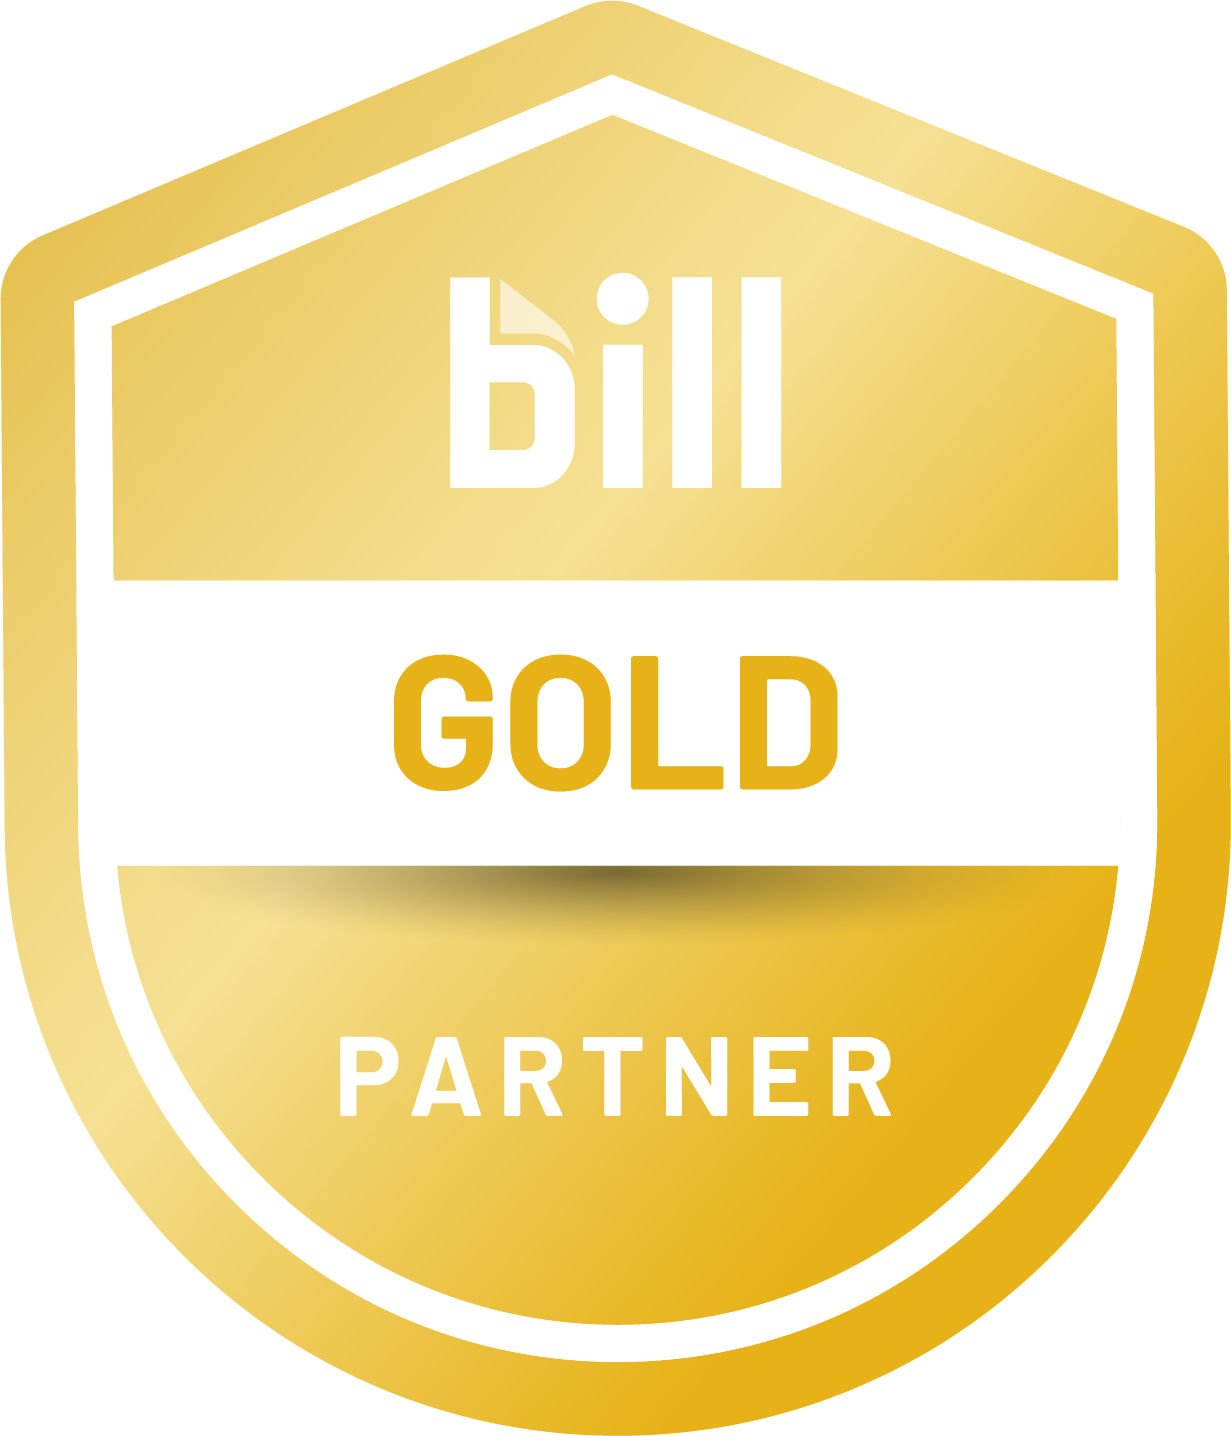 BILL Accountant Partner Program - Gold Partner